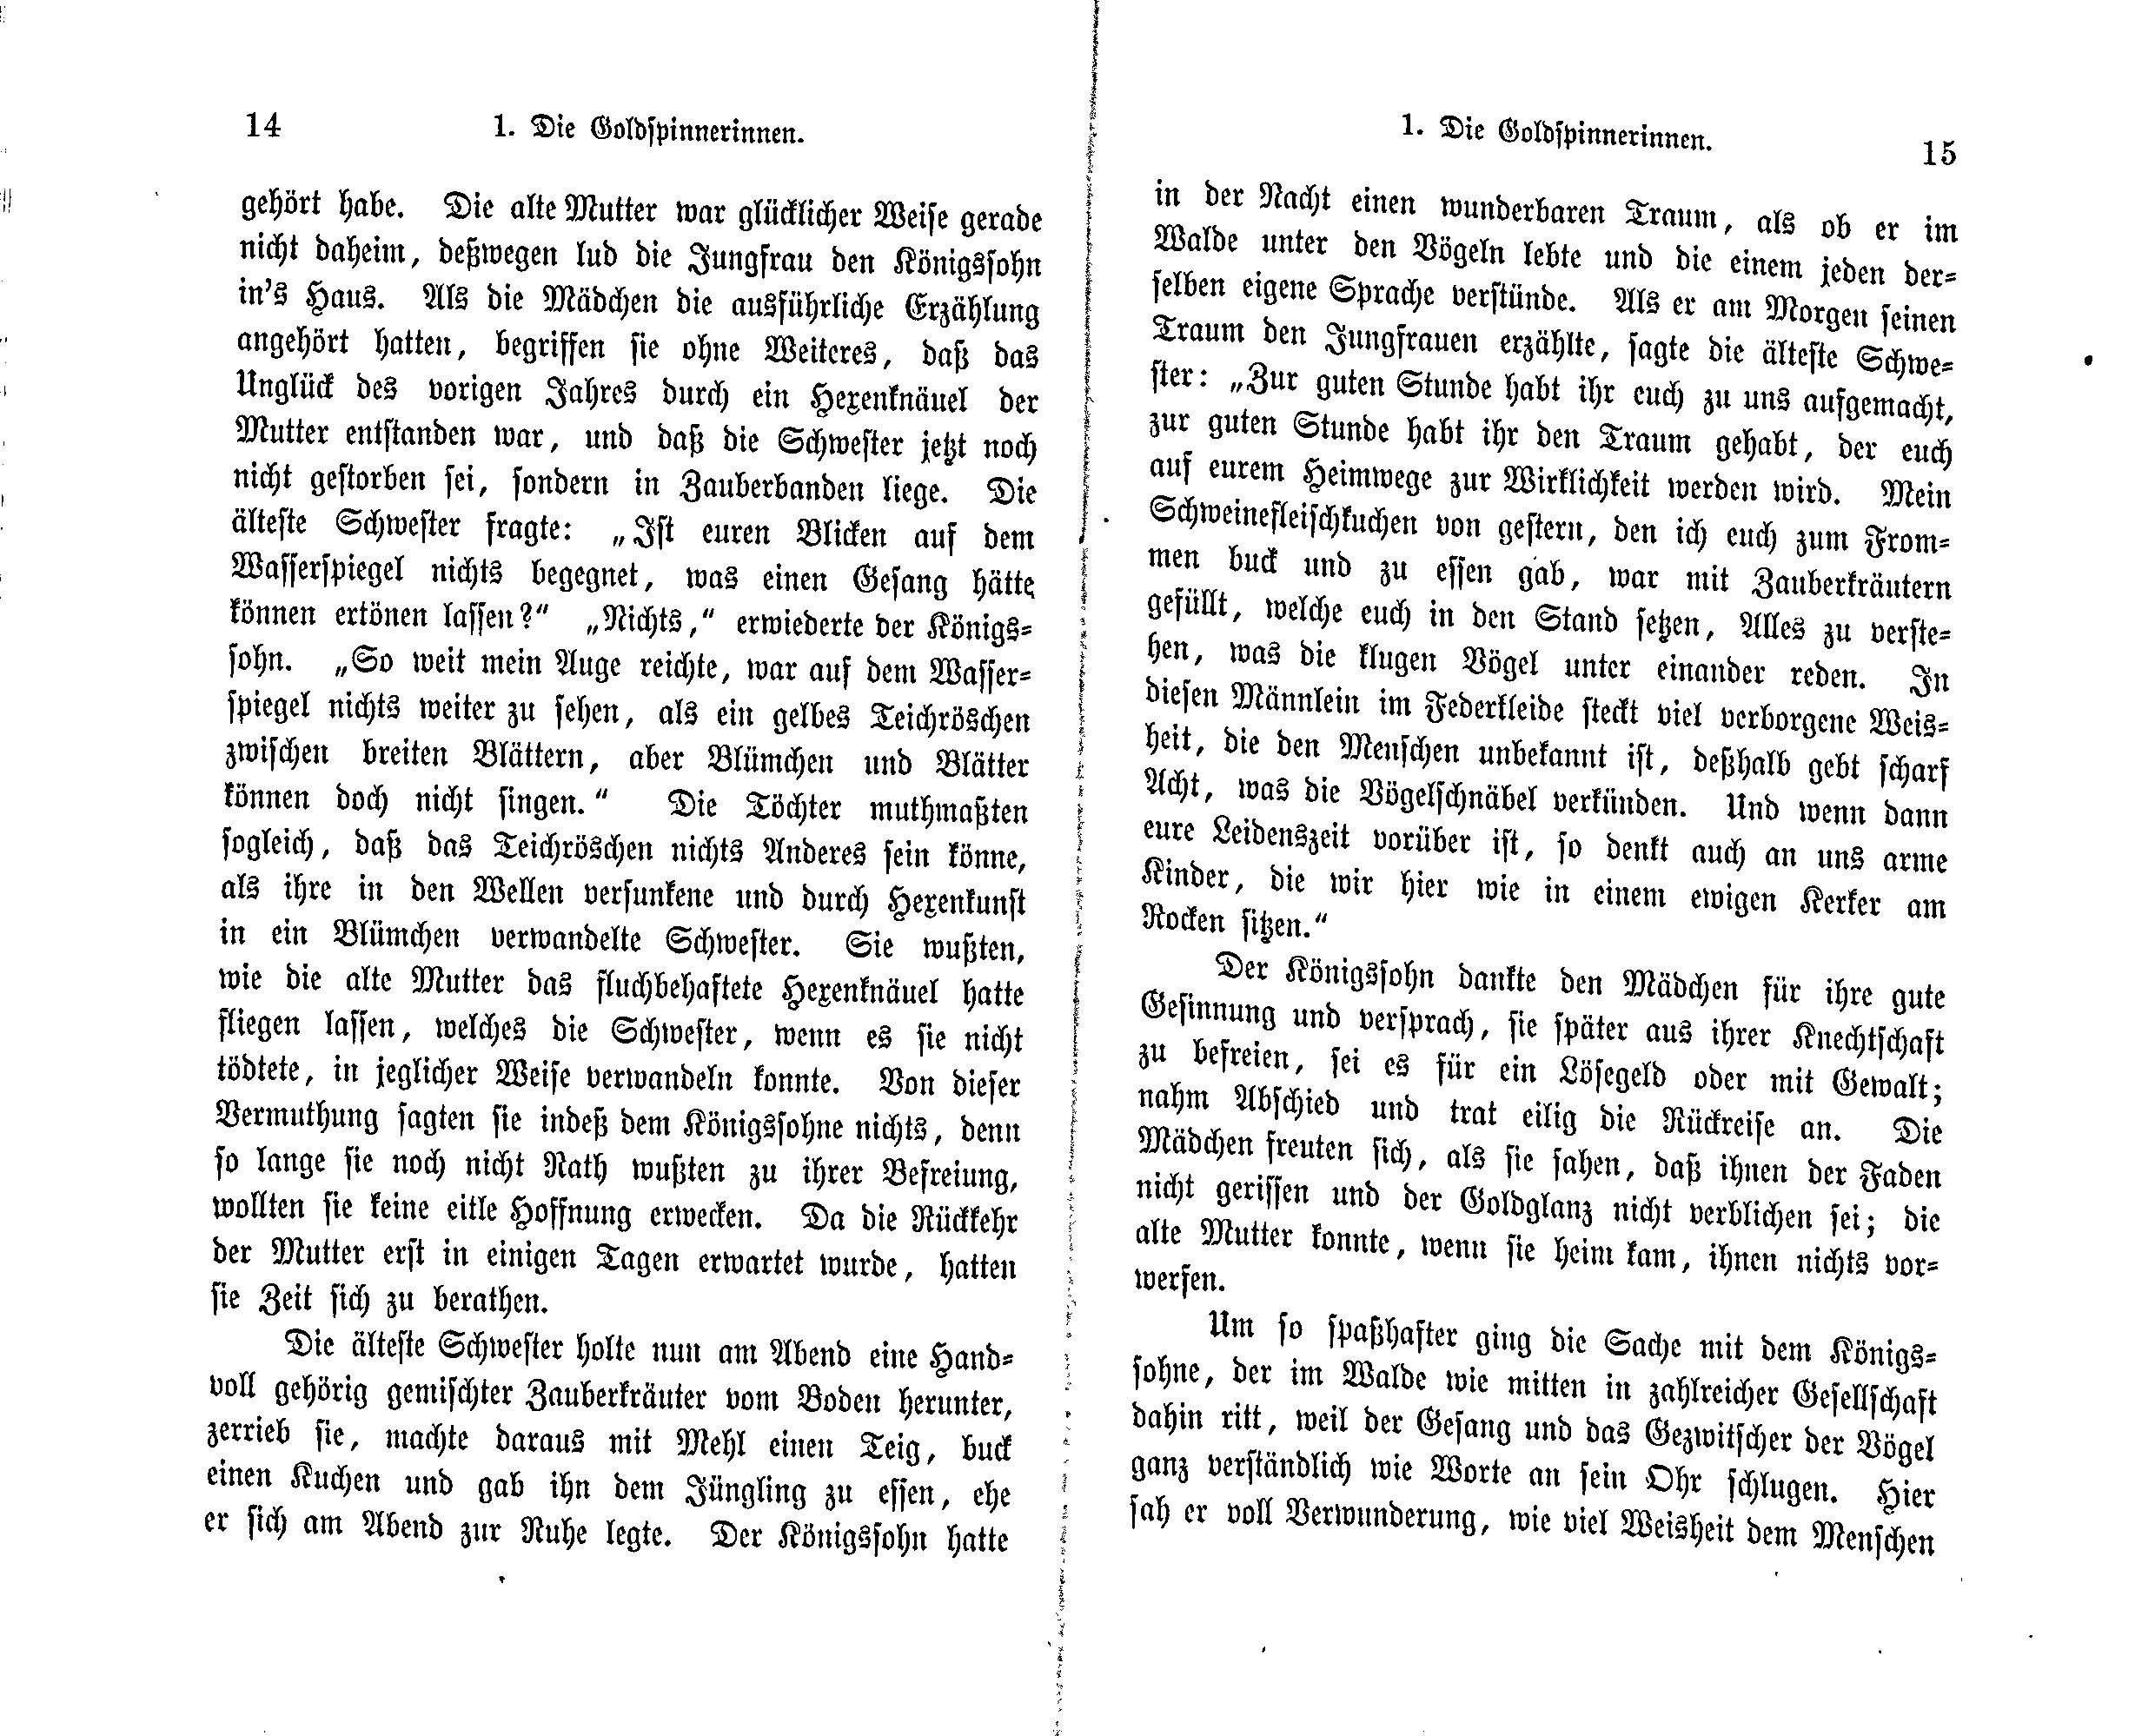 Die Goldspinnerinnen (1869) | 8. (14-15) Основной текст